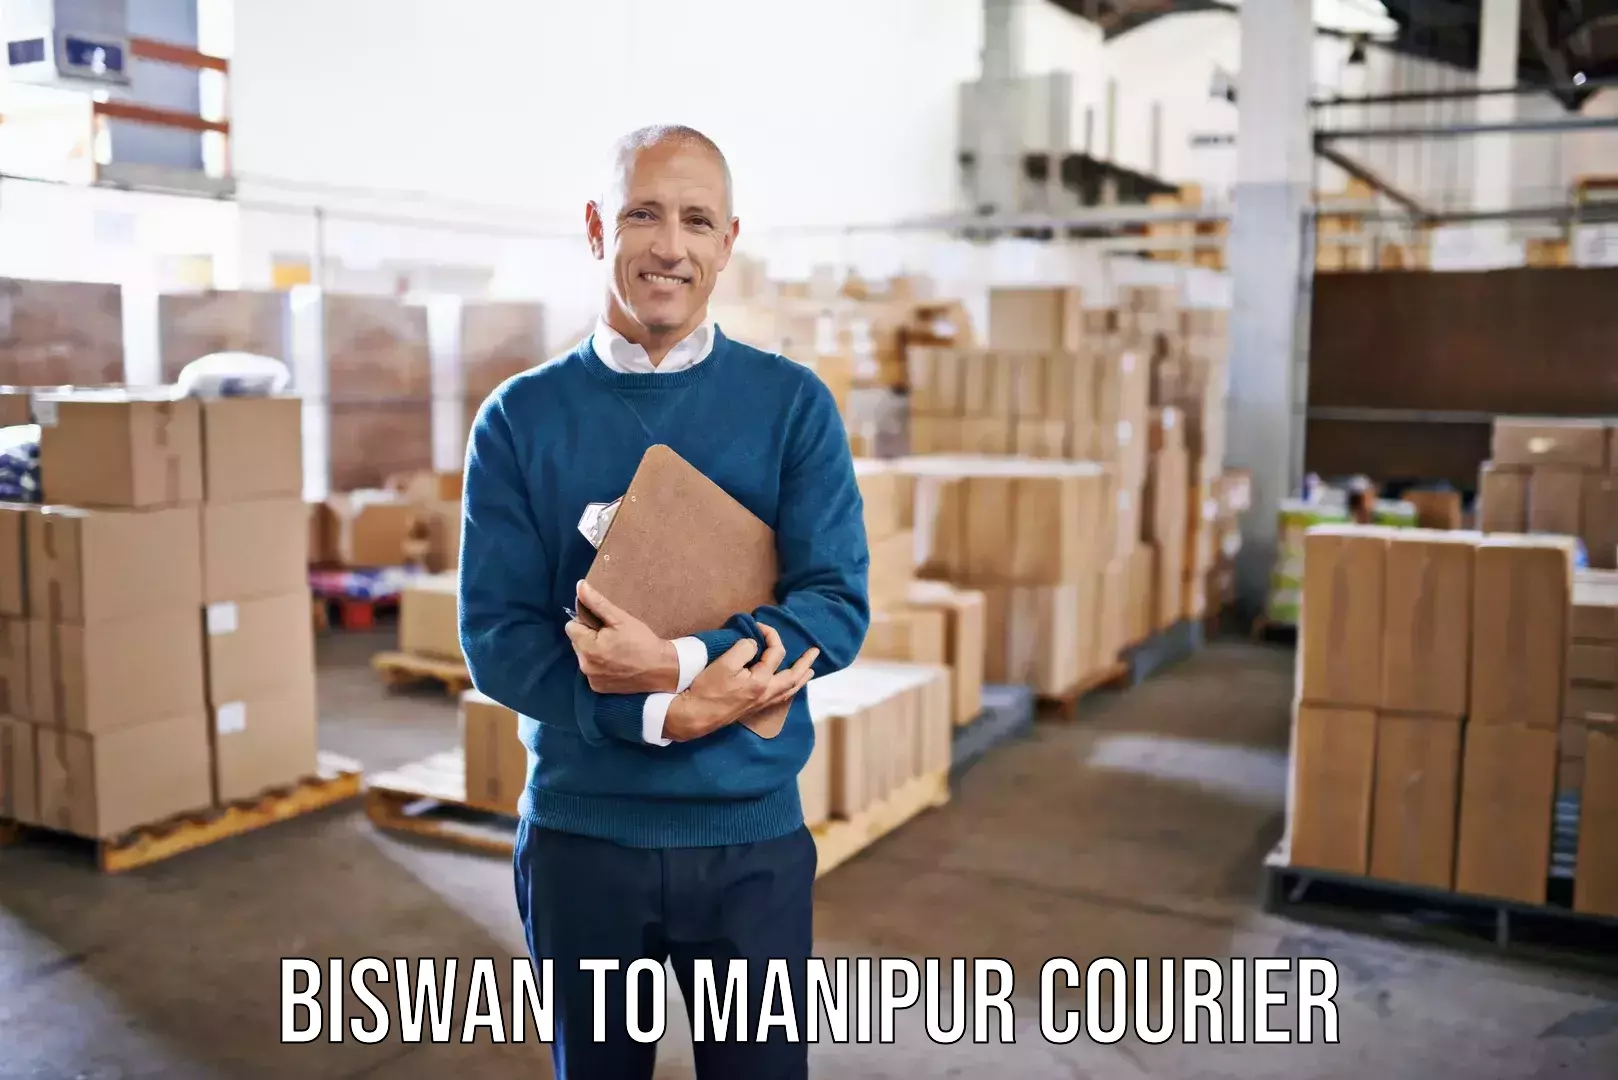 Furniture moving and handling Biswan to Jiribam